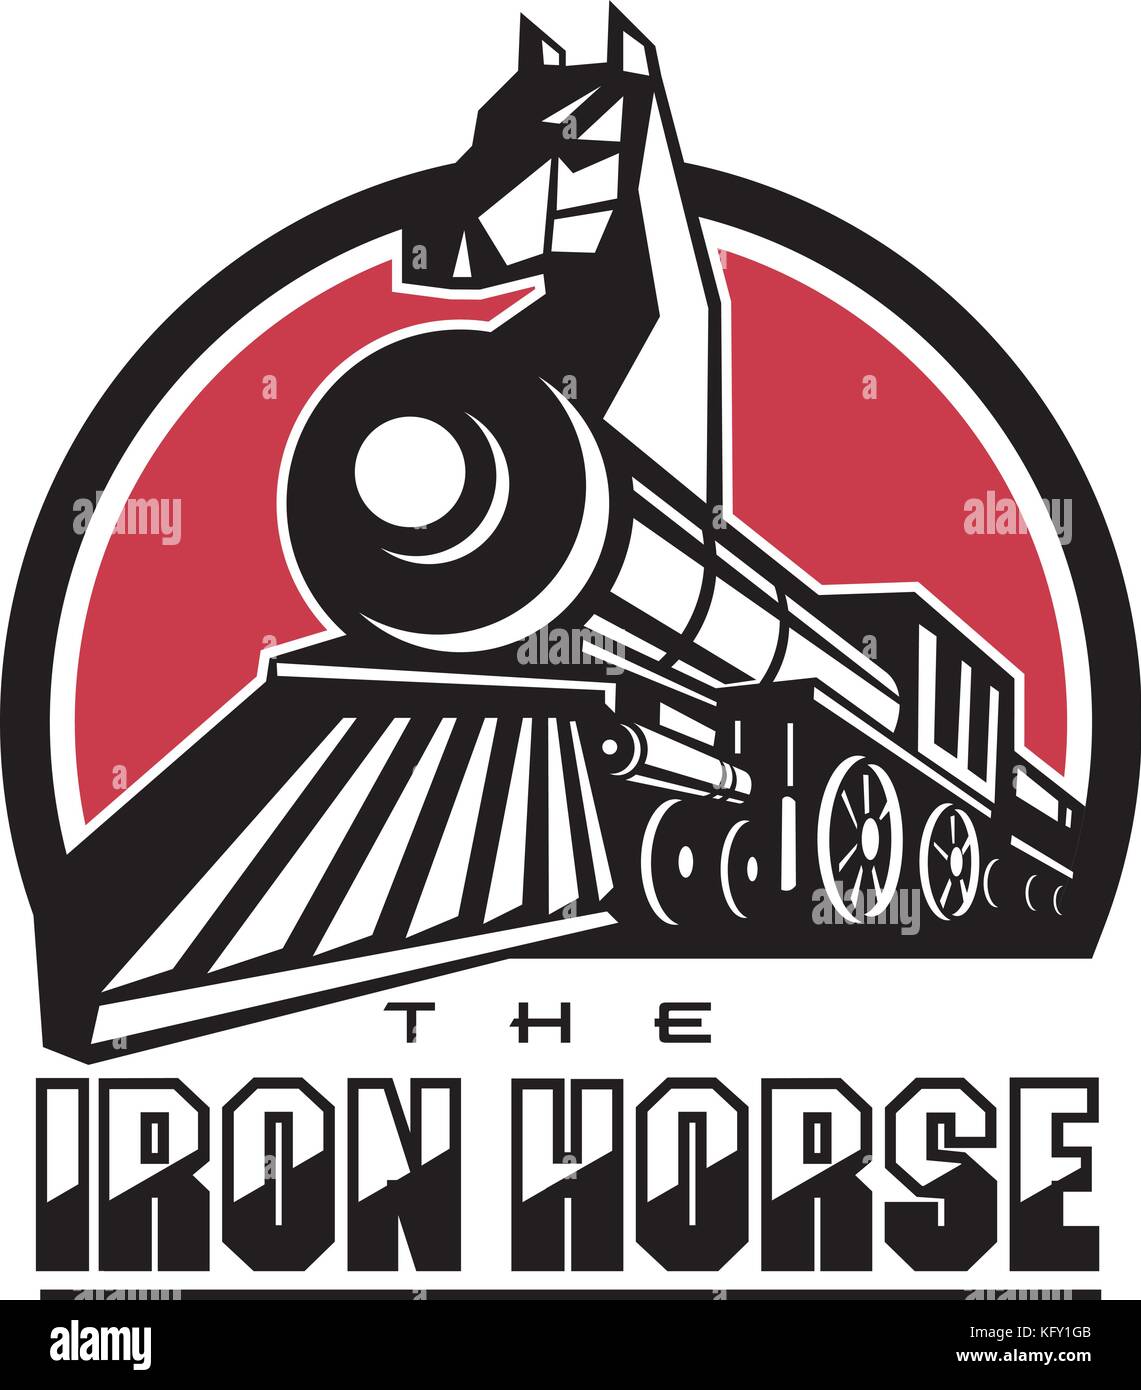 Illustration de style rétro du cheval de fer montrant la tête de cheval en train à vapeur locomotive avec le texte mis à l'intérieur du cercle. Illustration de Vecteur